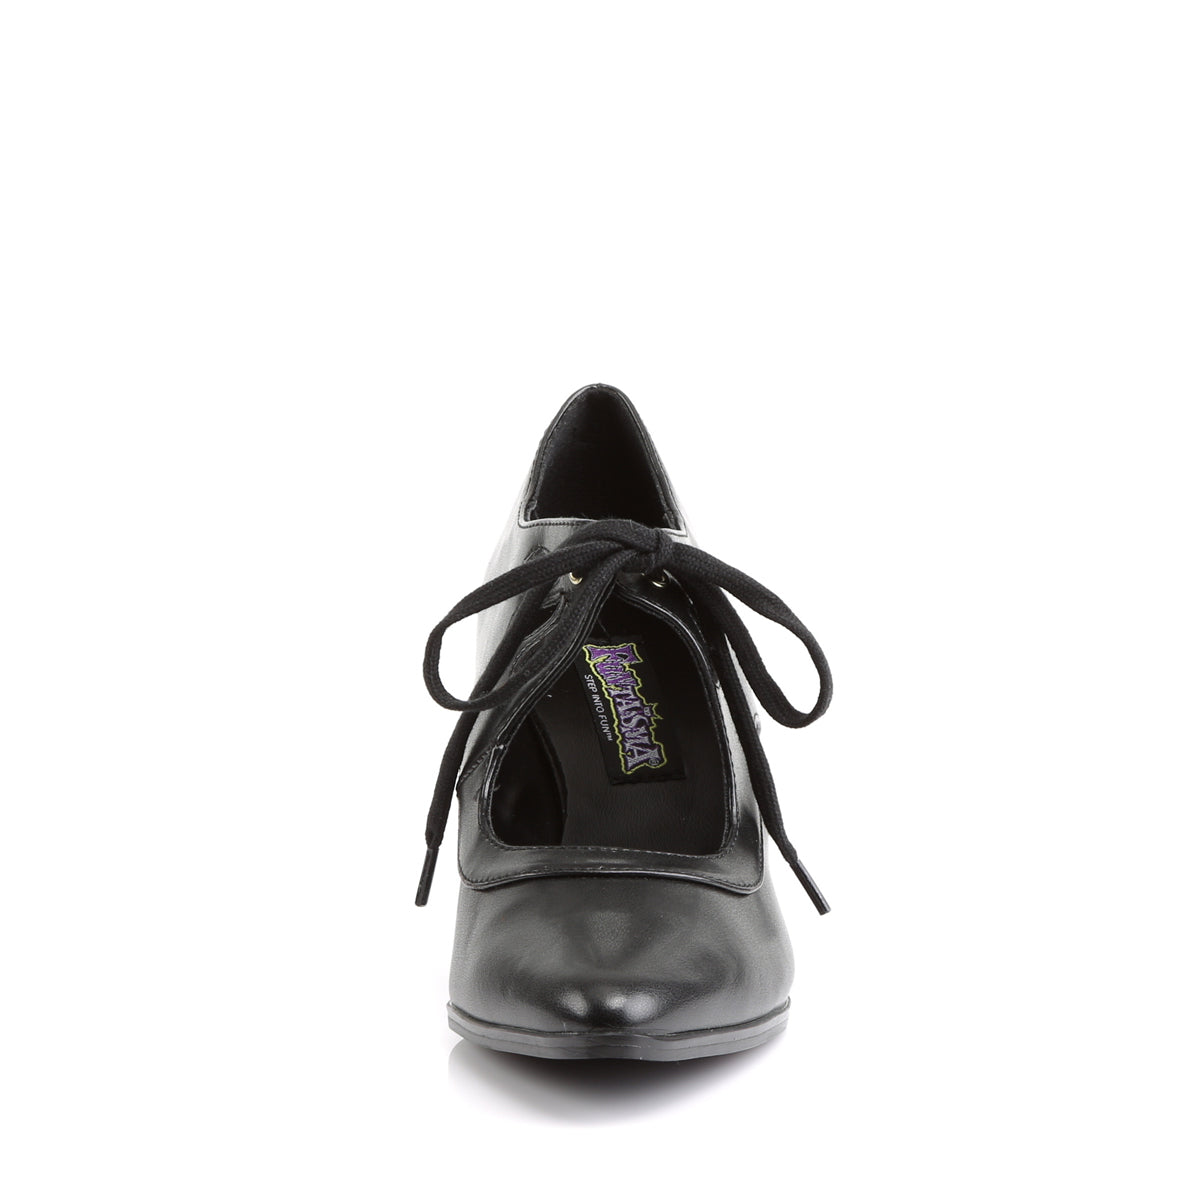 VICTORIAN-03 Funtasma Fantasy Black Pu Women's Shoes [Fancy Dress Footwear]